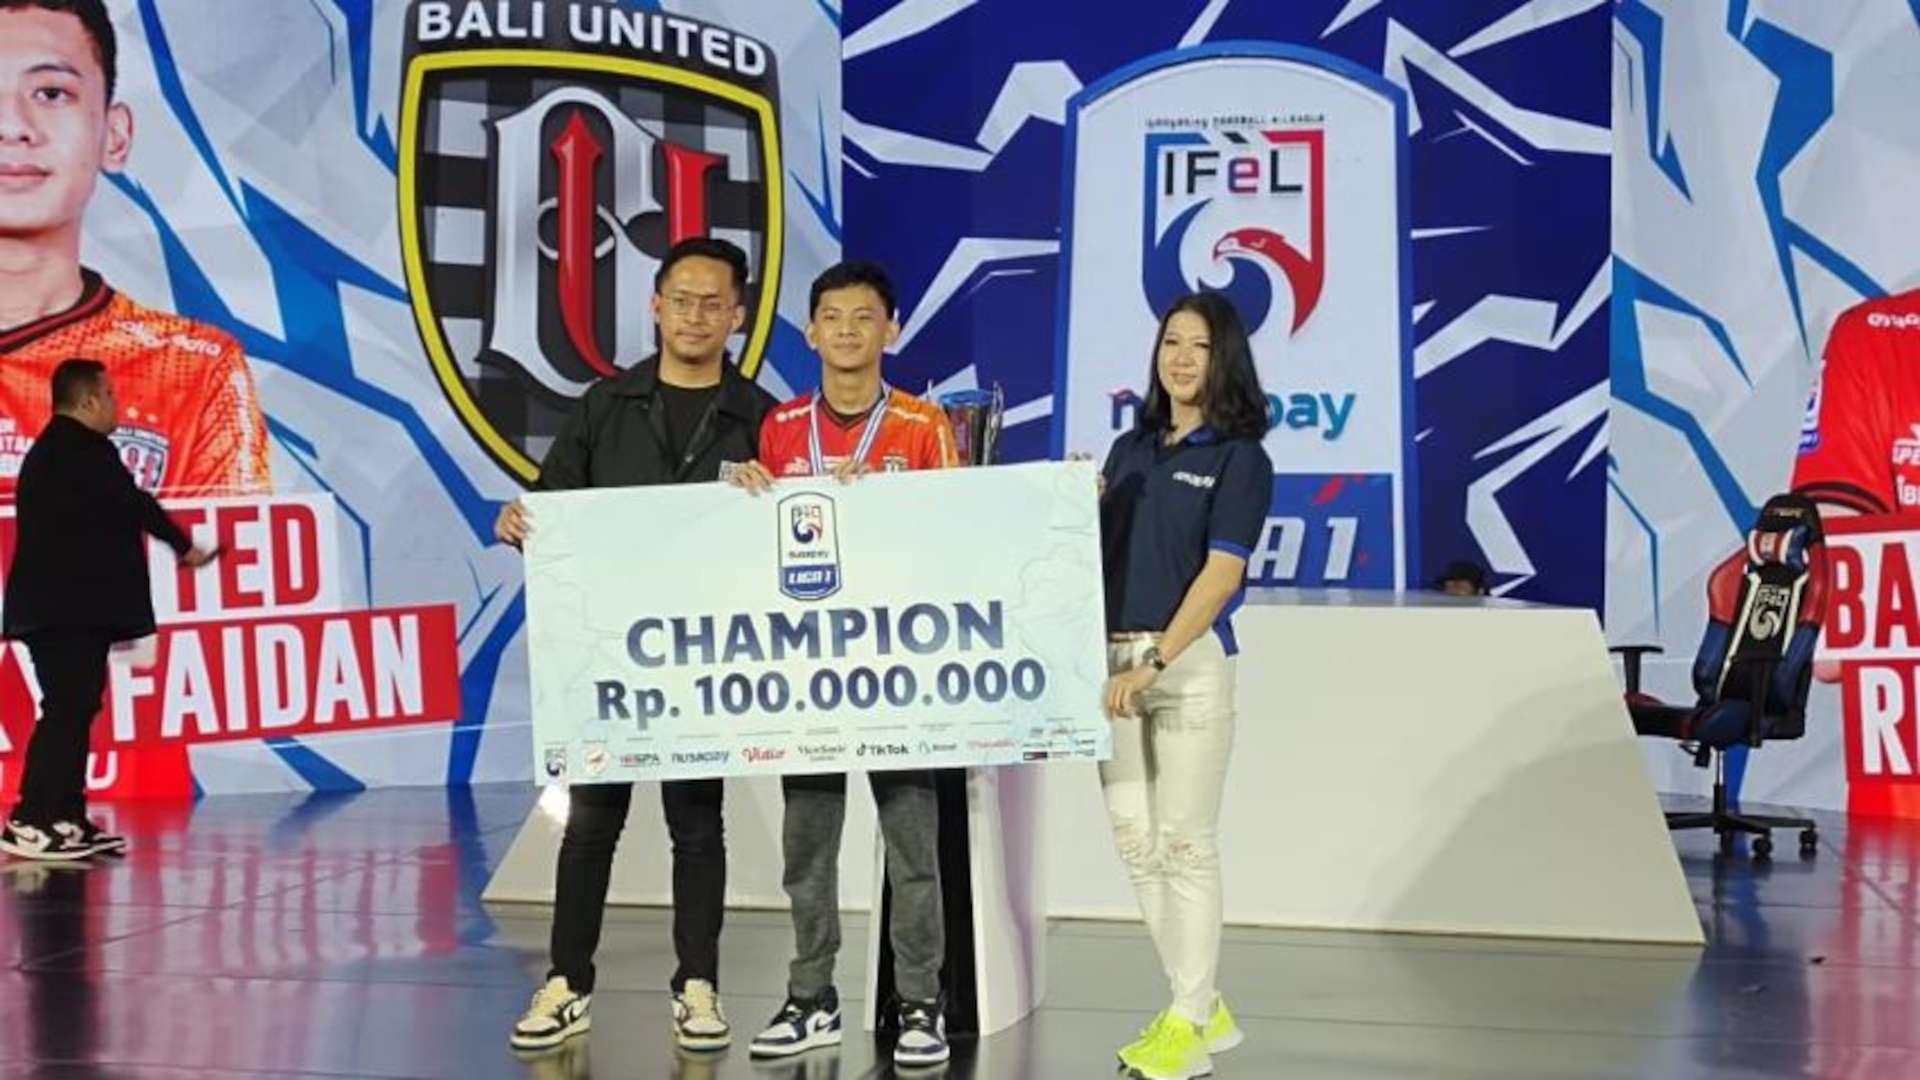 Rizky Faidan - Bali United